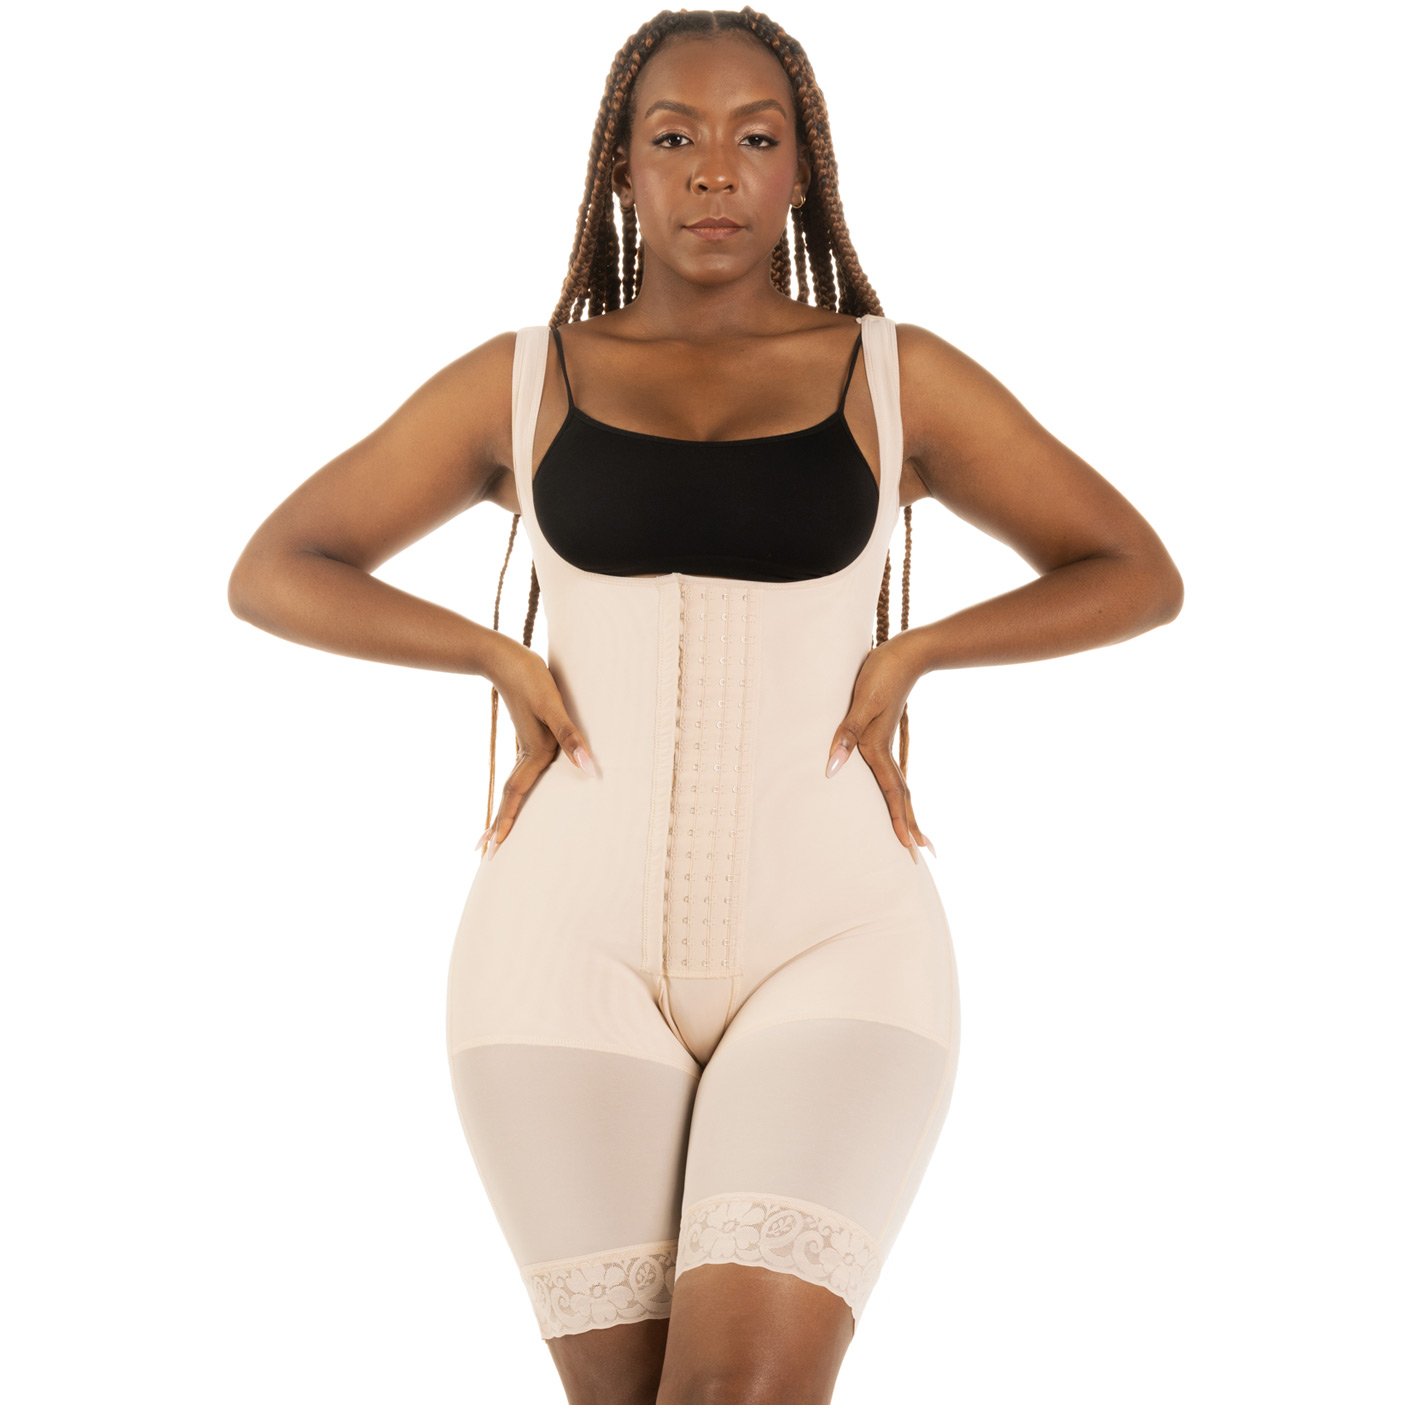 fvwitlyh Shapewear for Women Tummy Control plus Size Thigh High